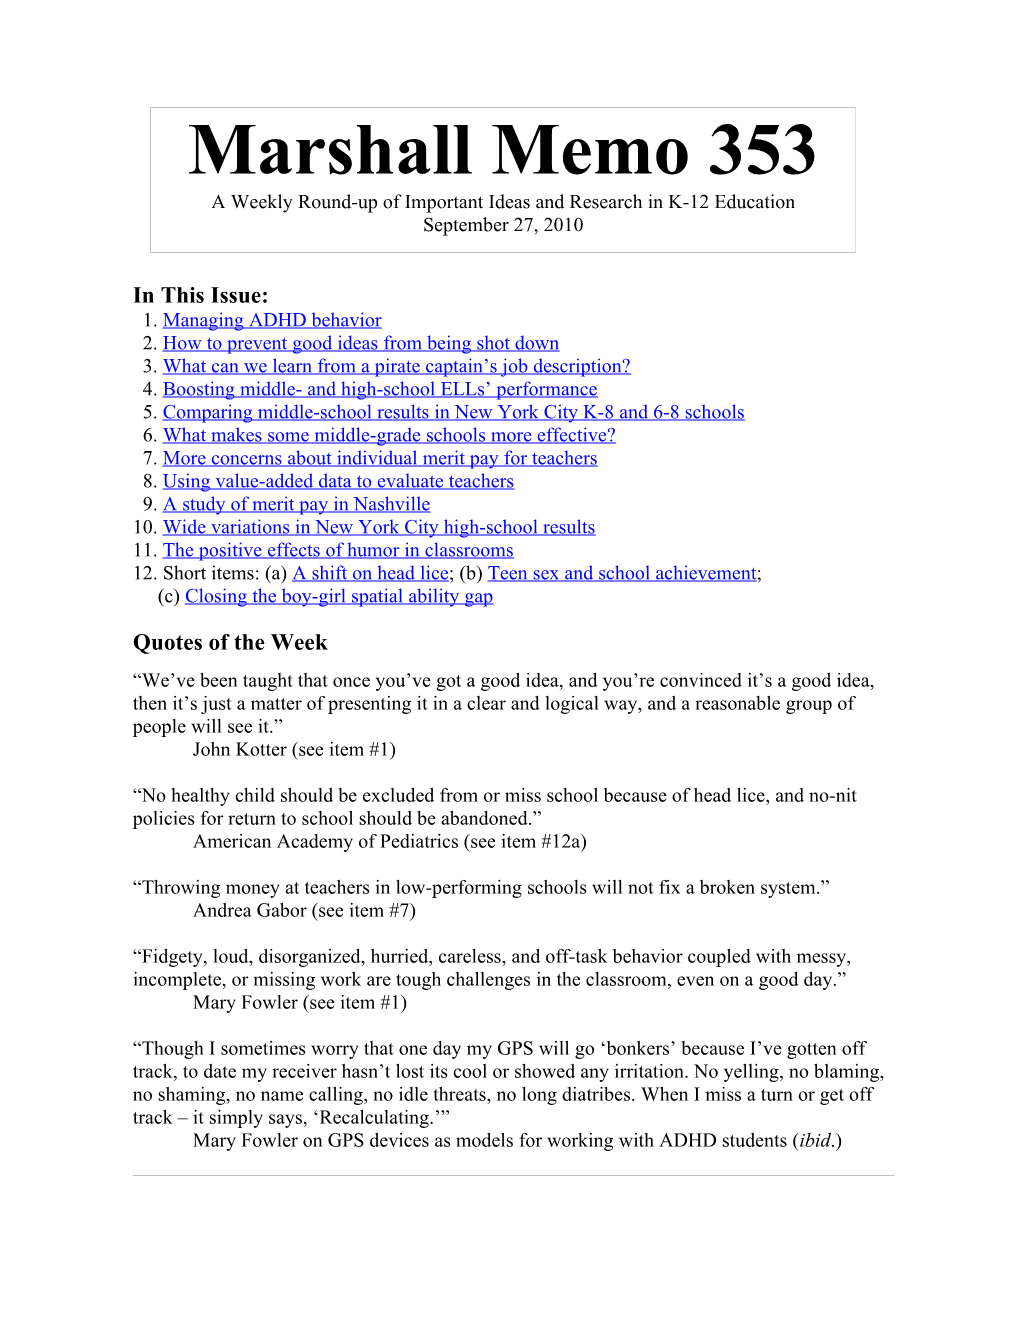 The Marshall Memo